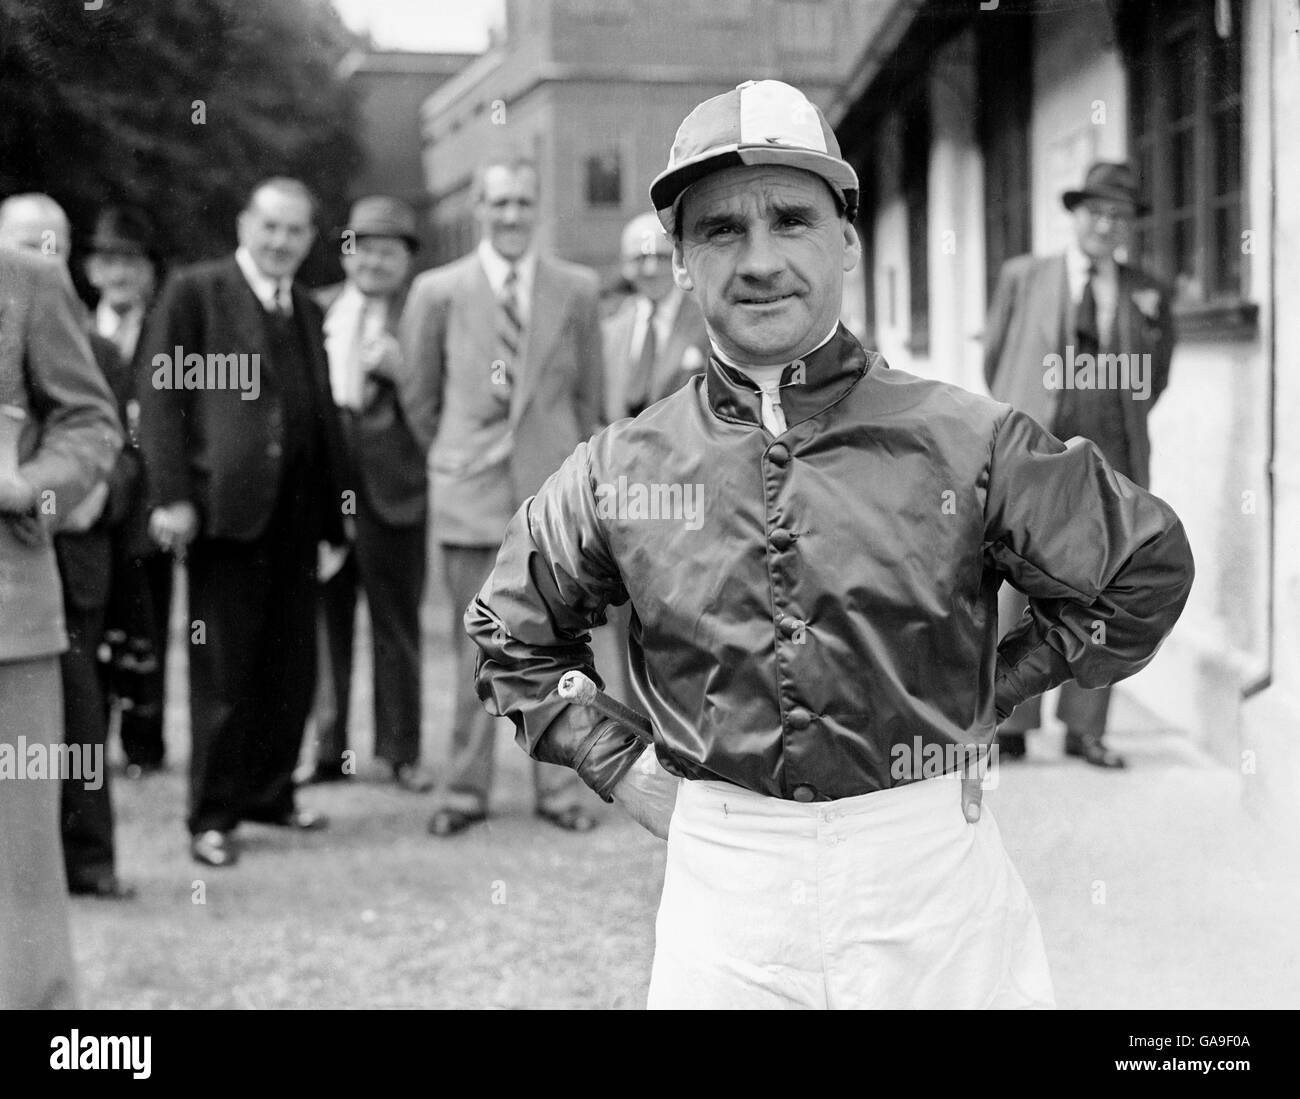 Gordon Richards, ein englischer Jockey, der oft als der größte Jockey der Welt gilt. Stockfoto